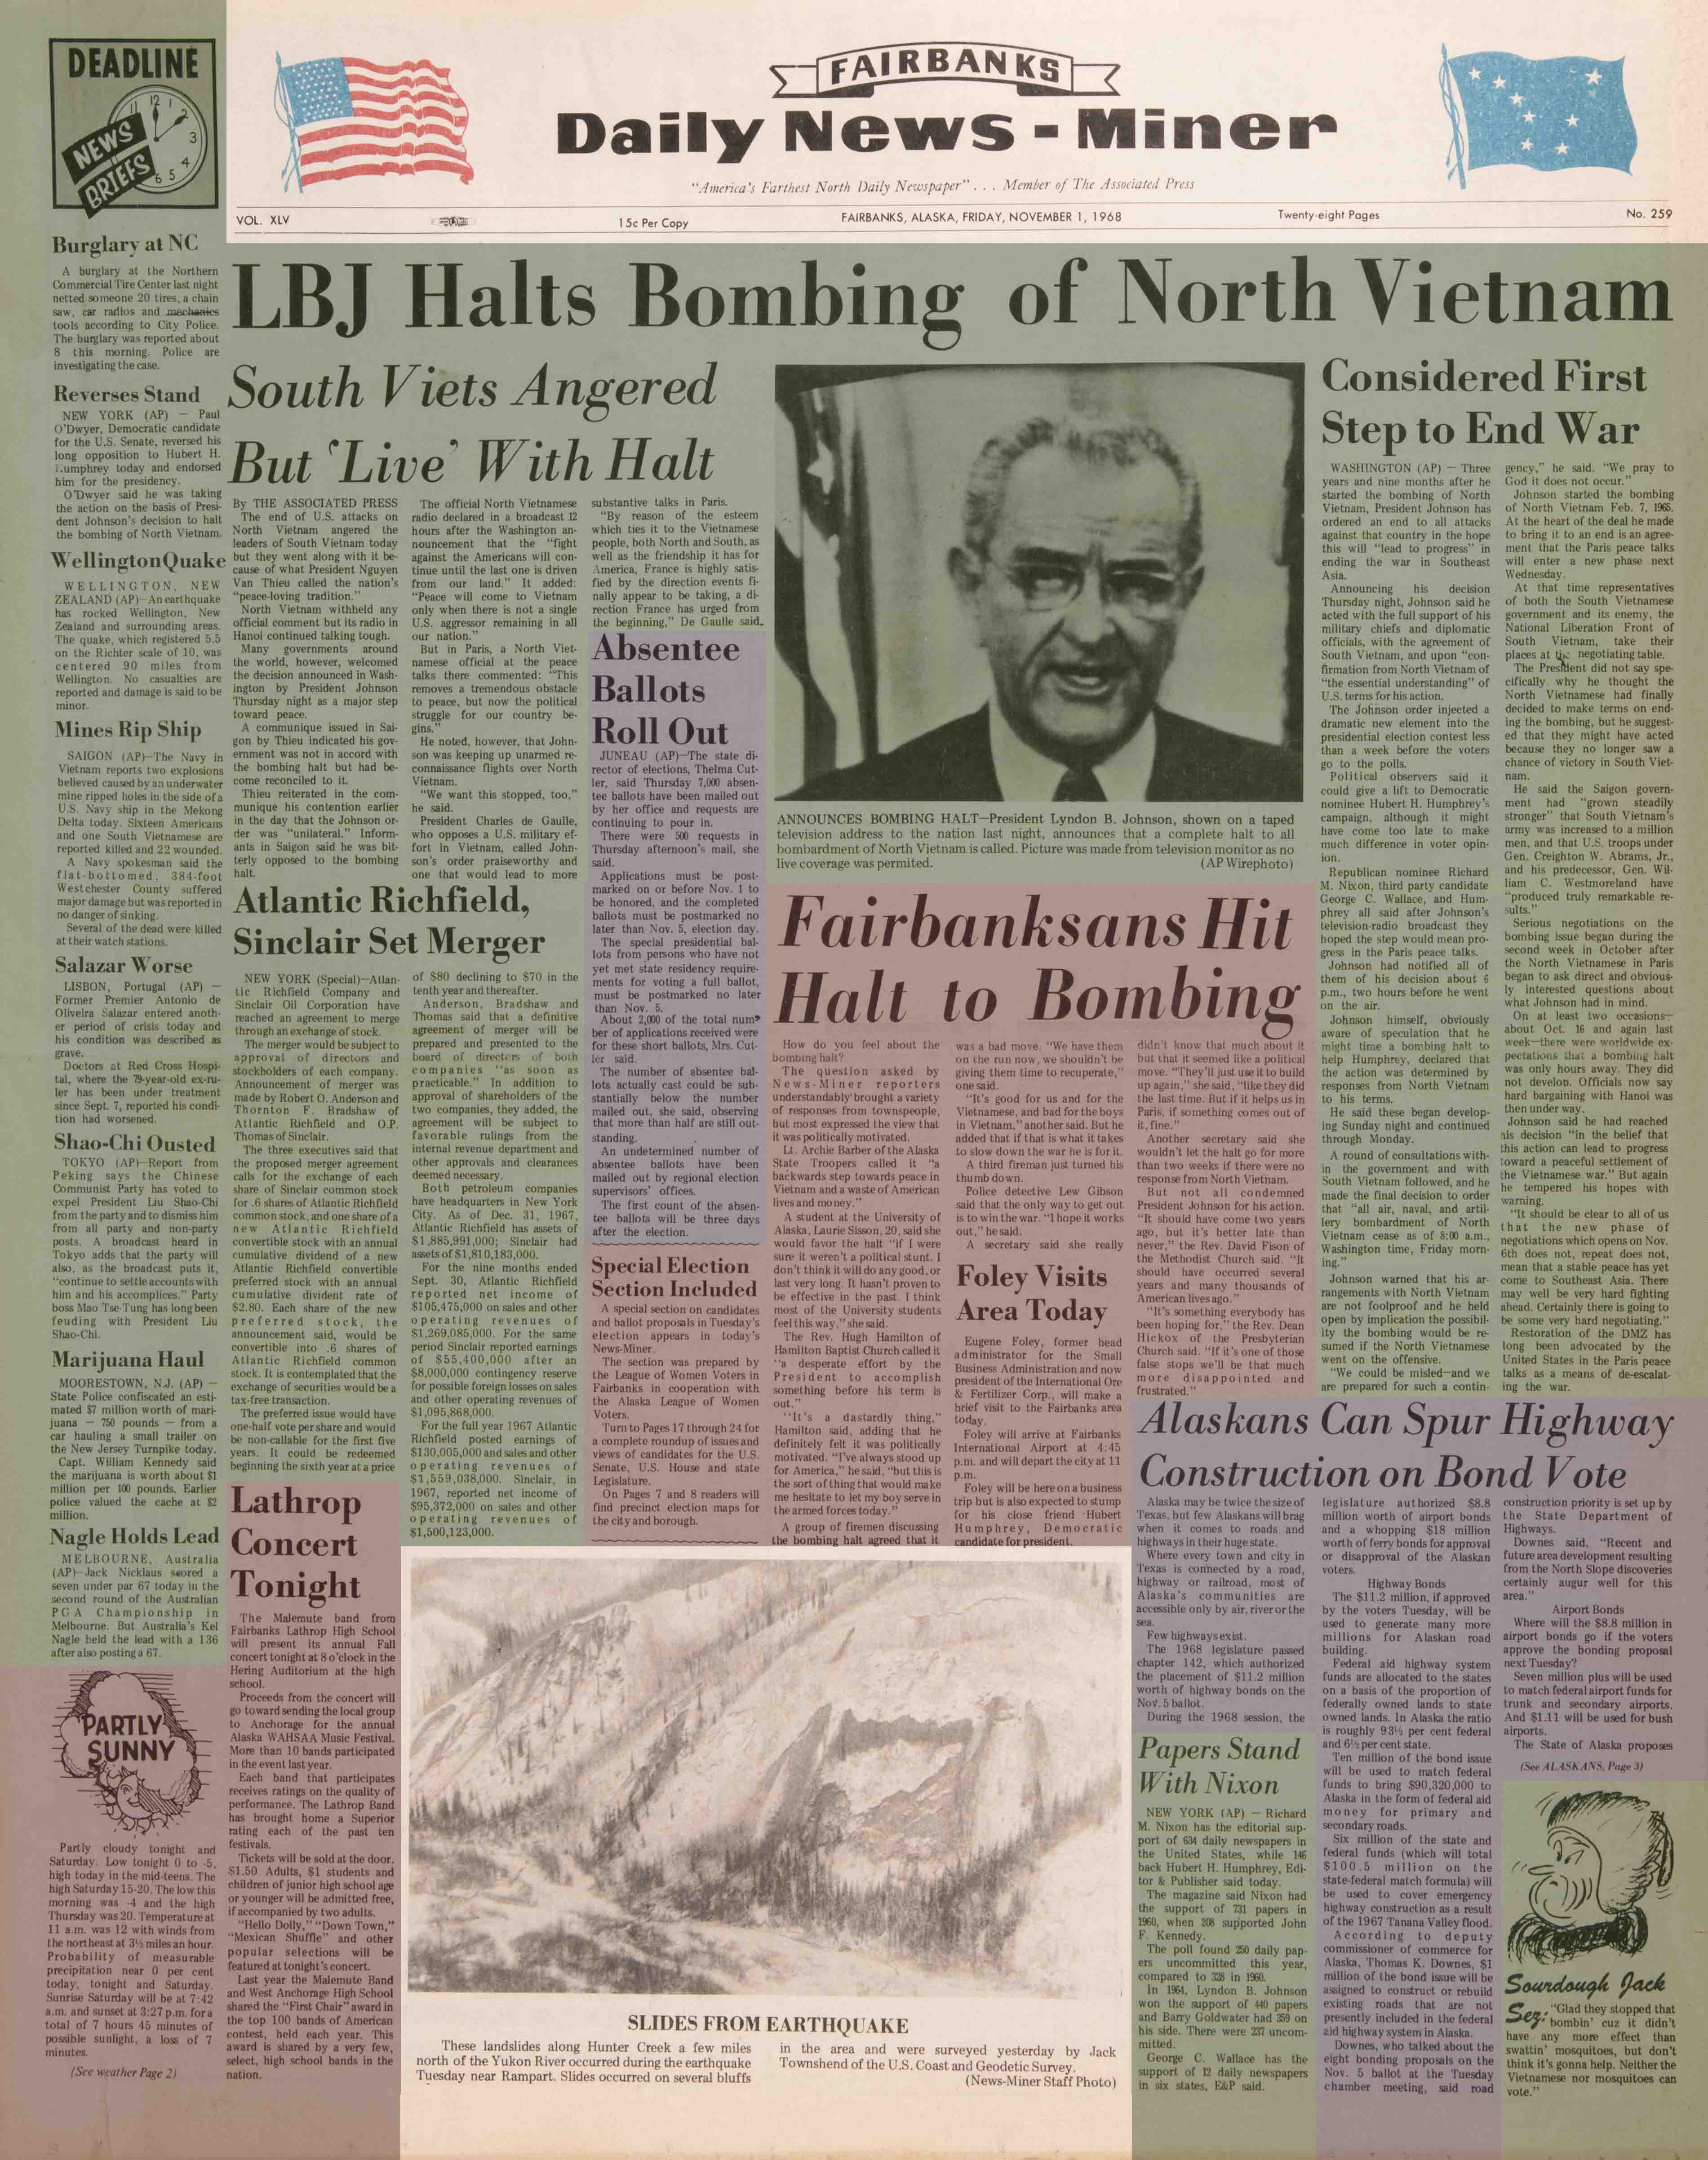 1968 November 1, Fairbanks Daily News-Miner (pg 1)